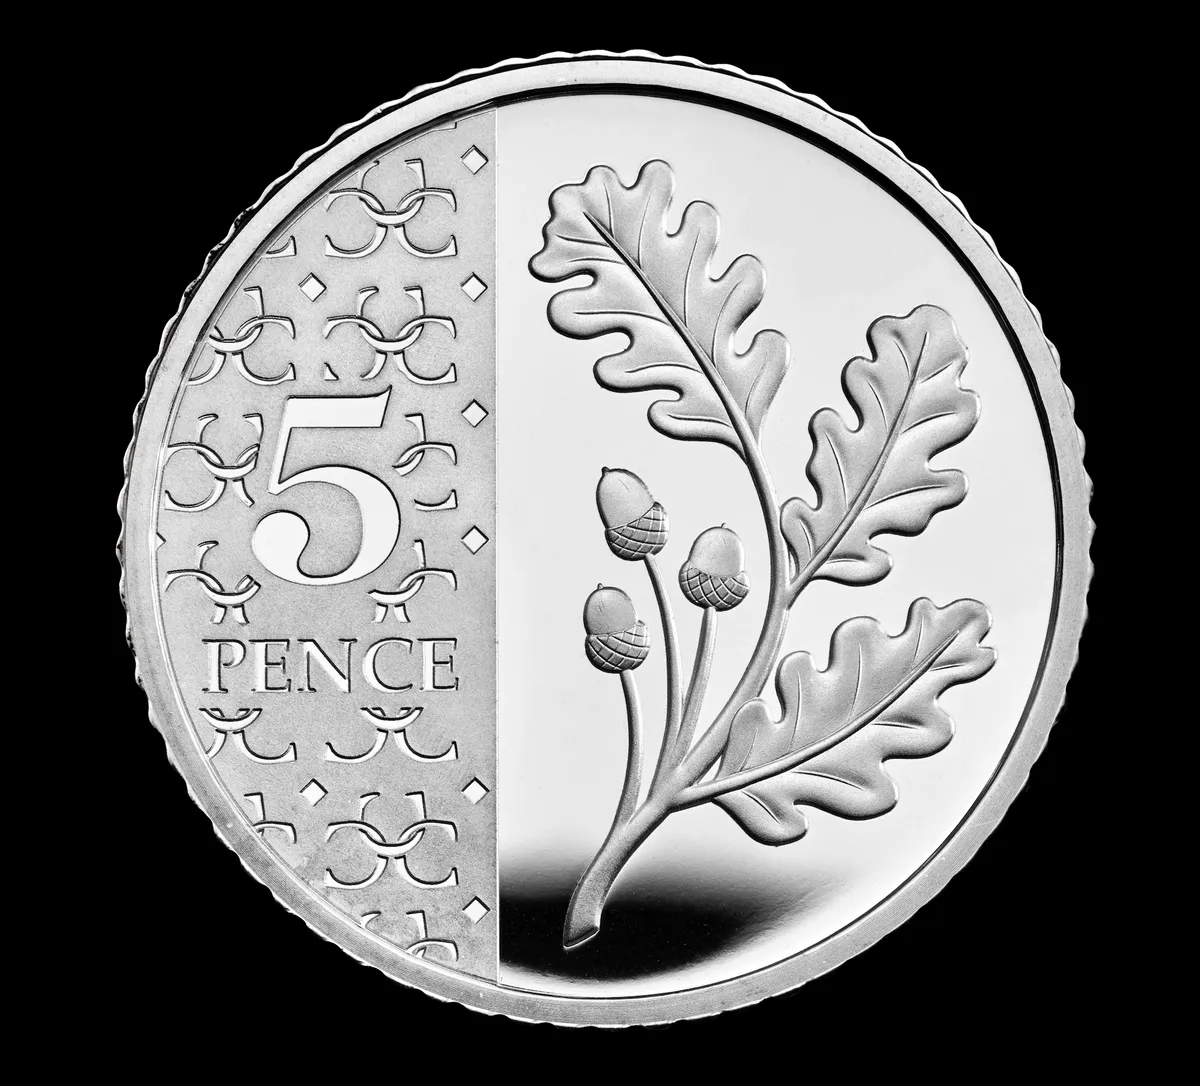 5p coin